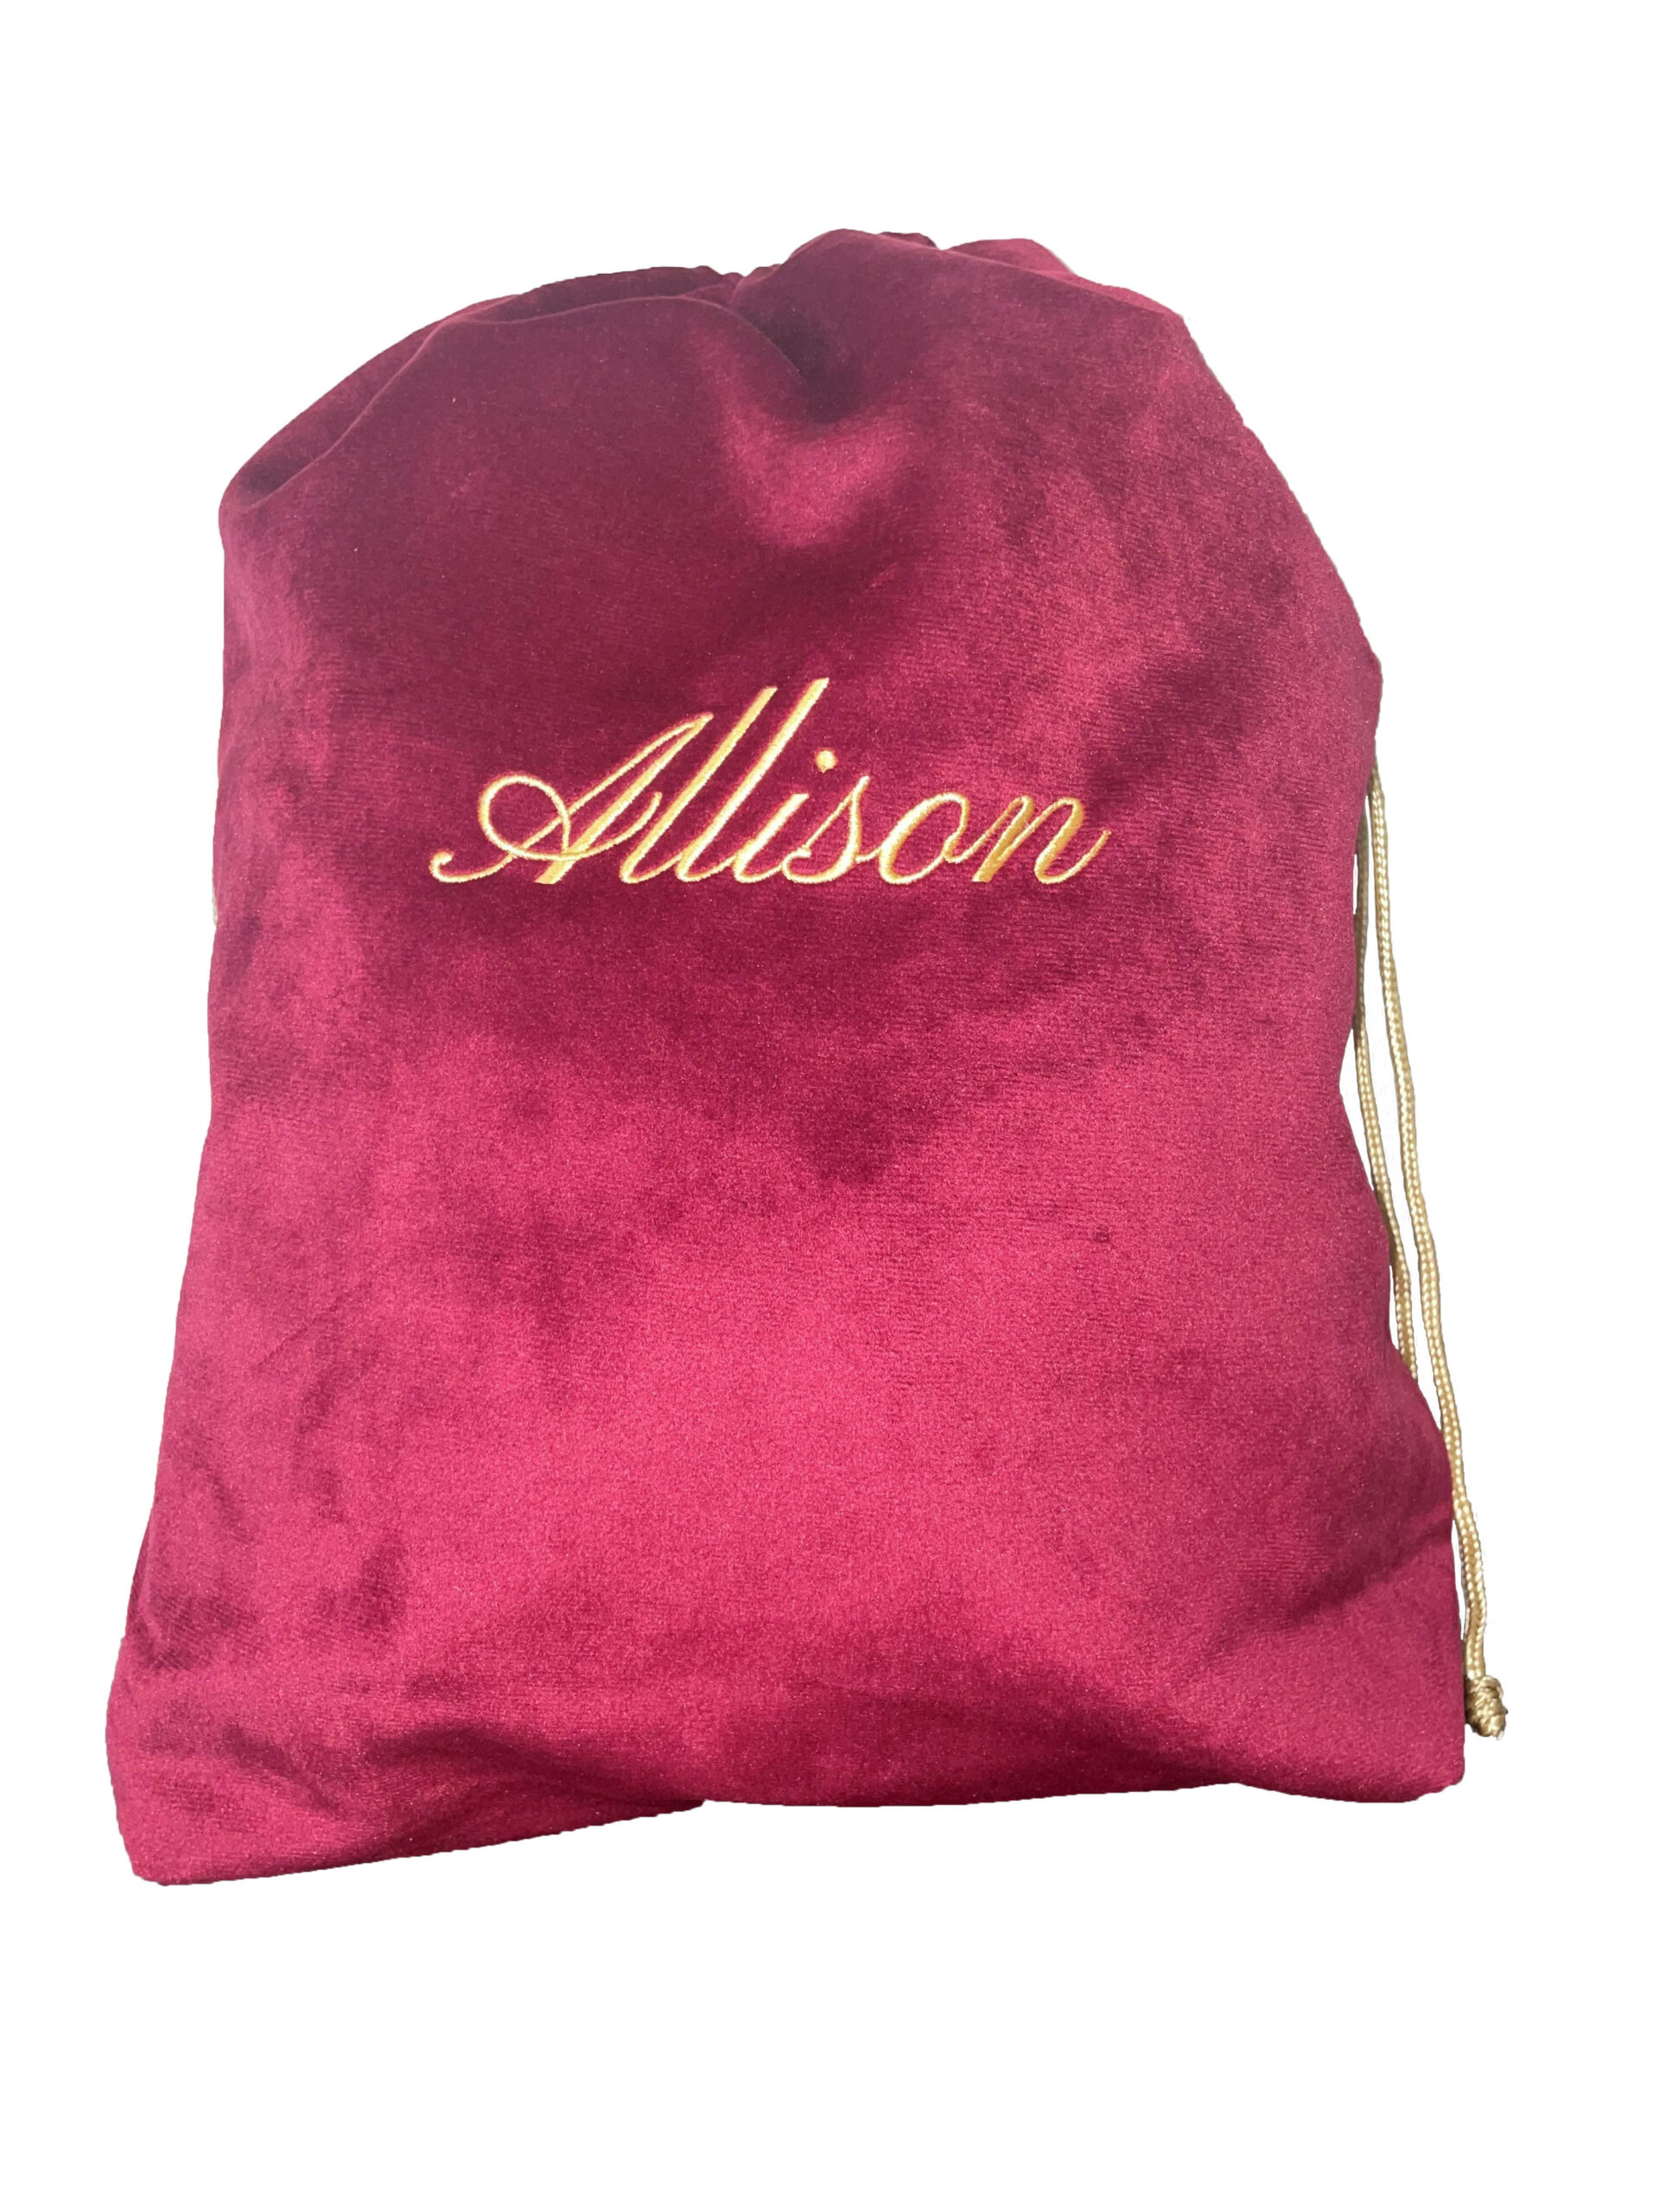 Allison-Urn-Bag-scaled-1.jpg